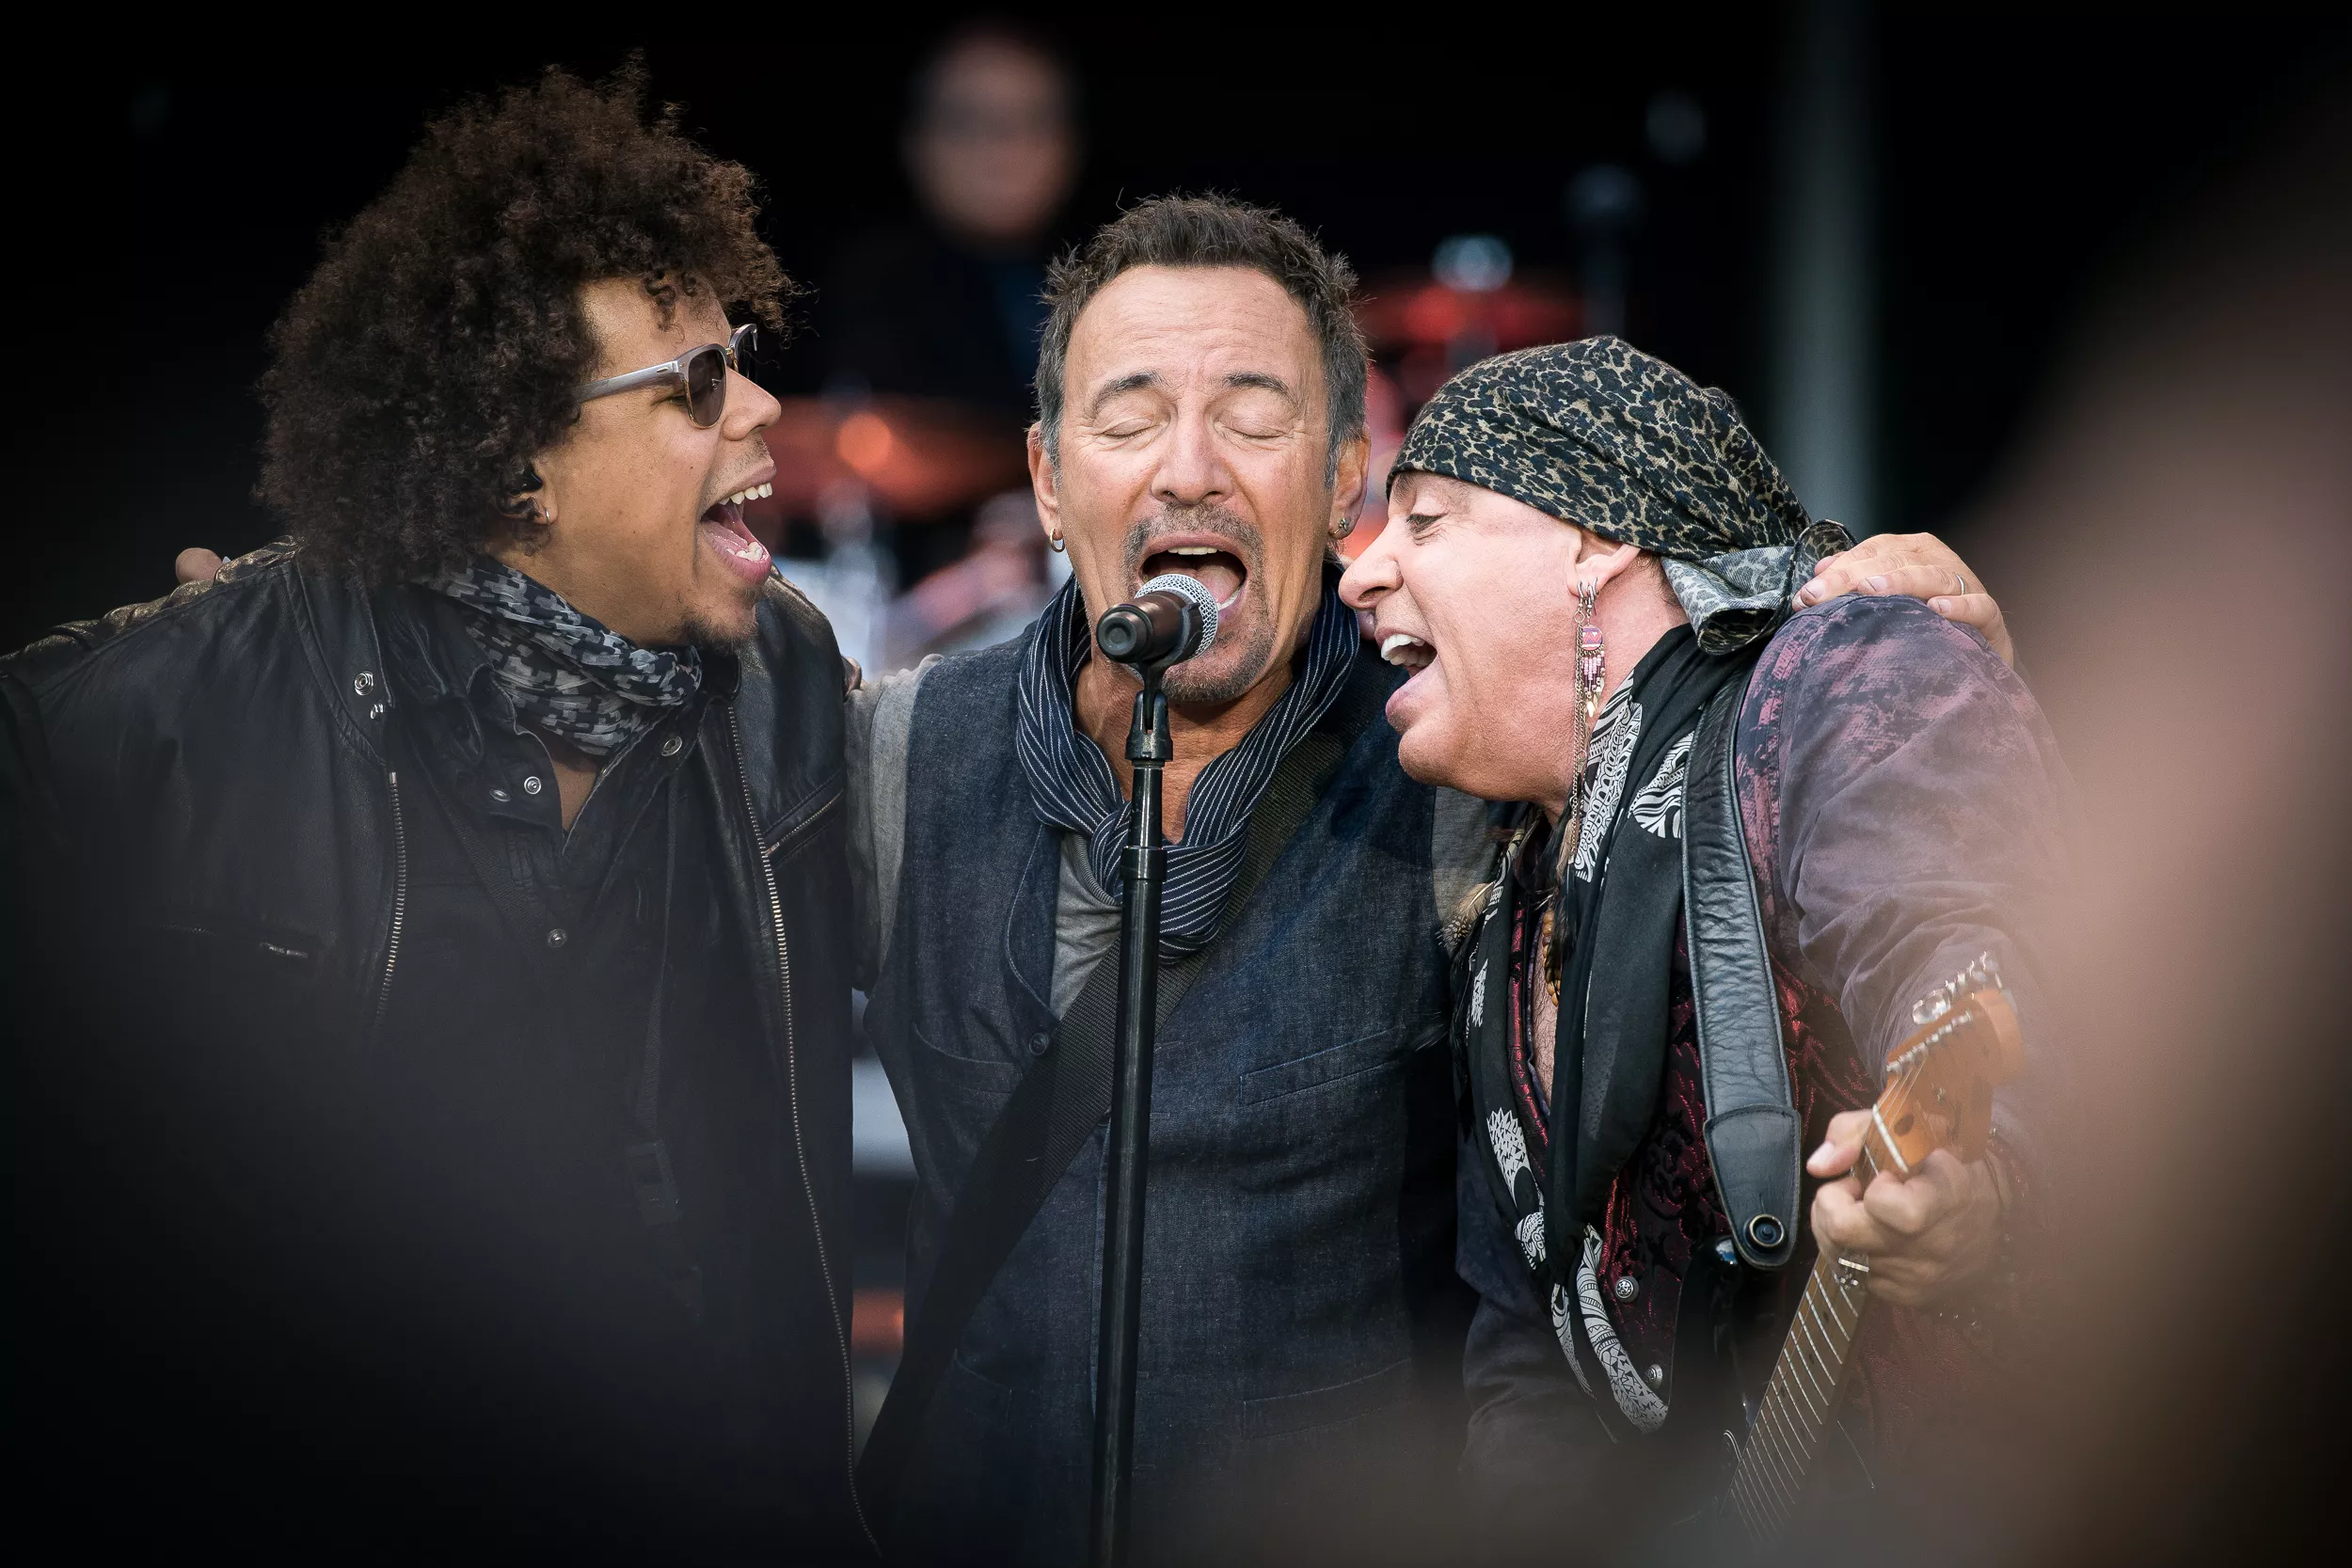 Bruce Springsteens medkumpan gör Sverige